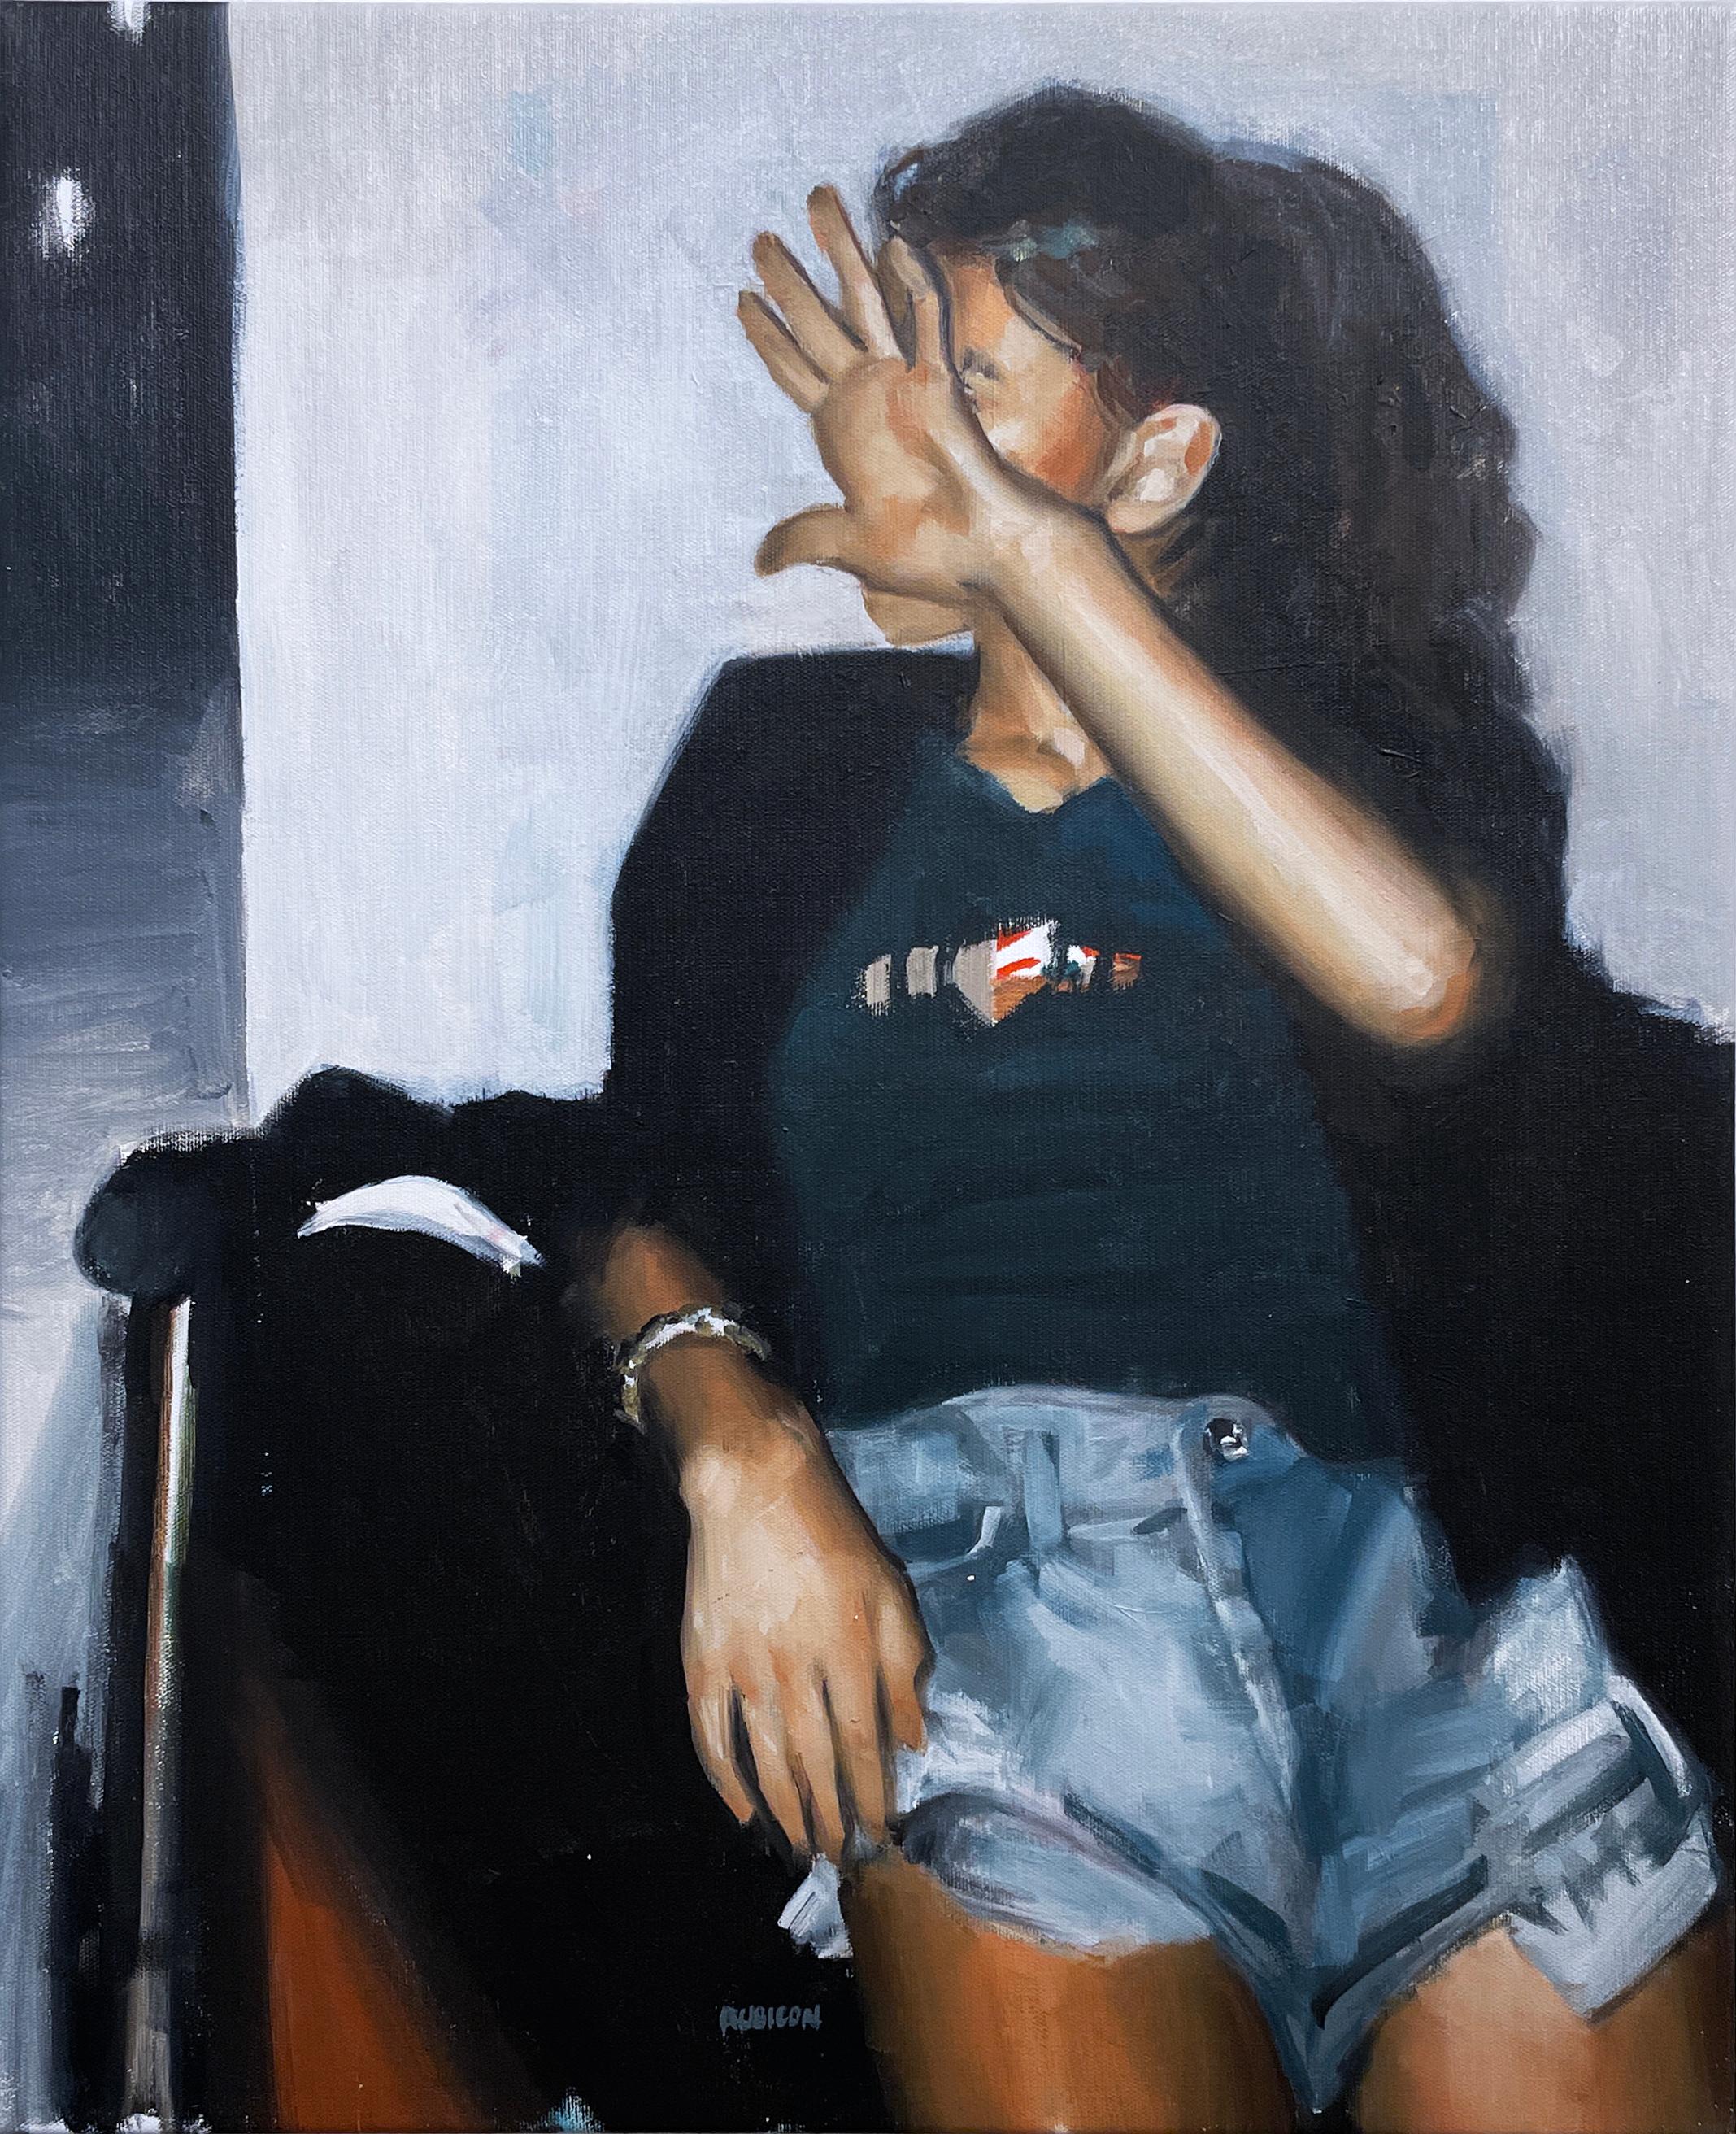 No Flash (2022) huile sur toile, figurative, cliché de femme, visage caché à la main  - Painting de RU8ICON1